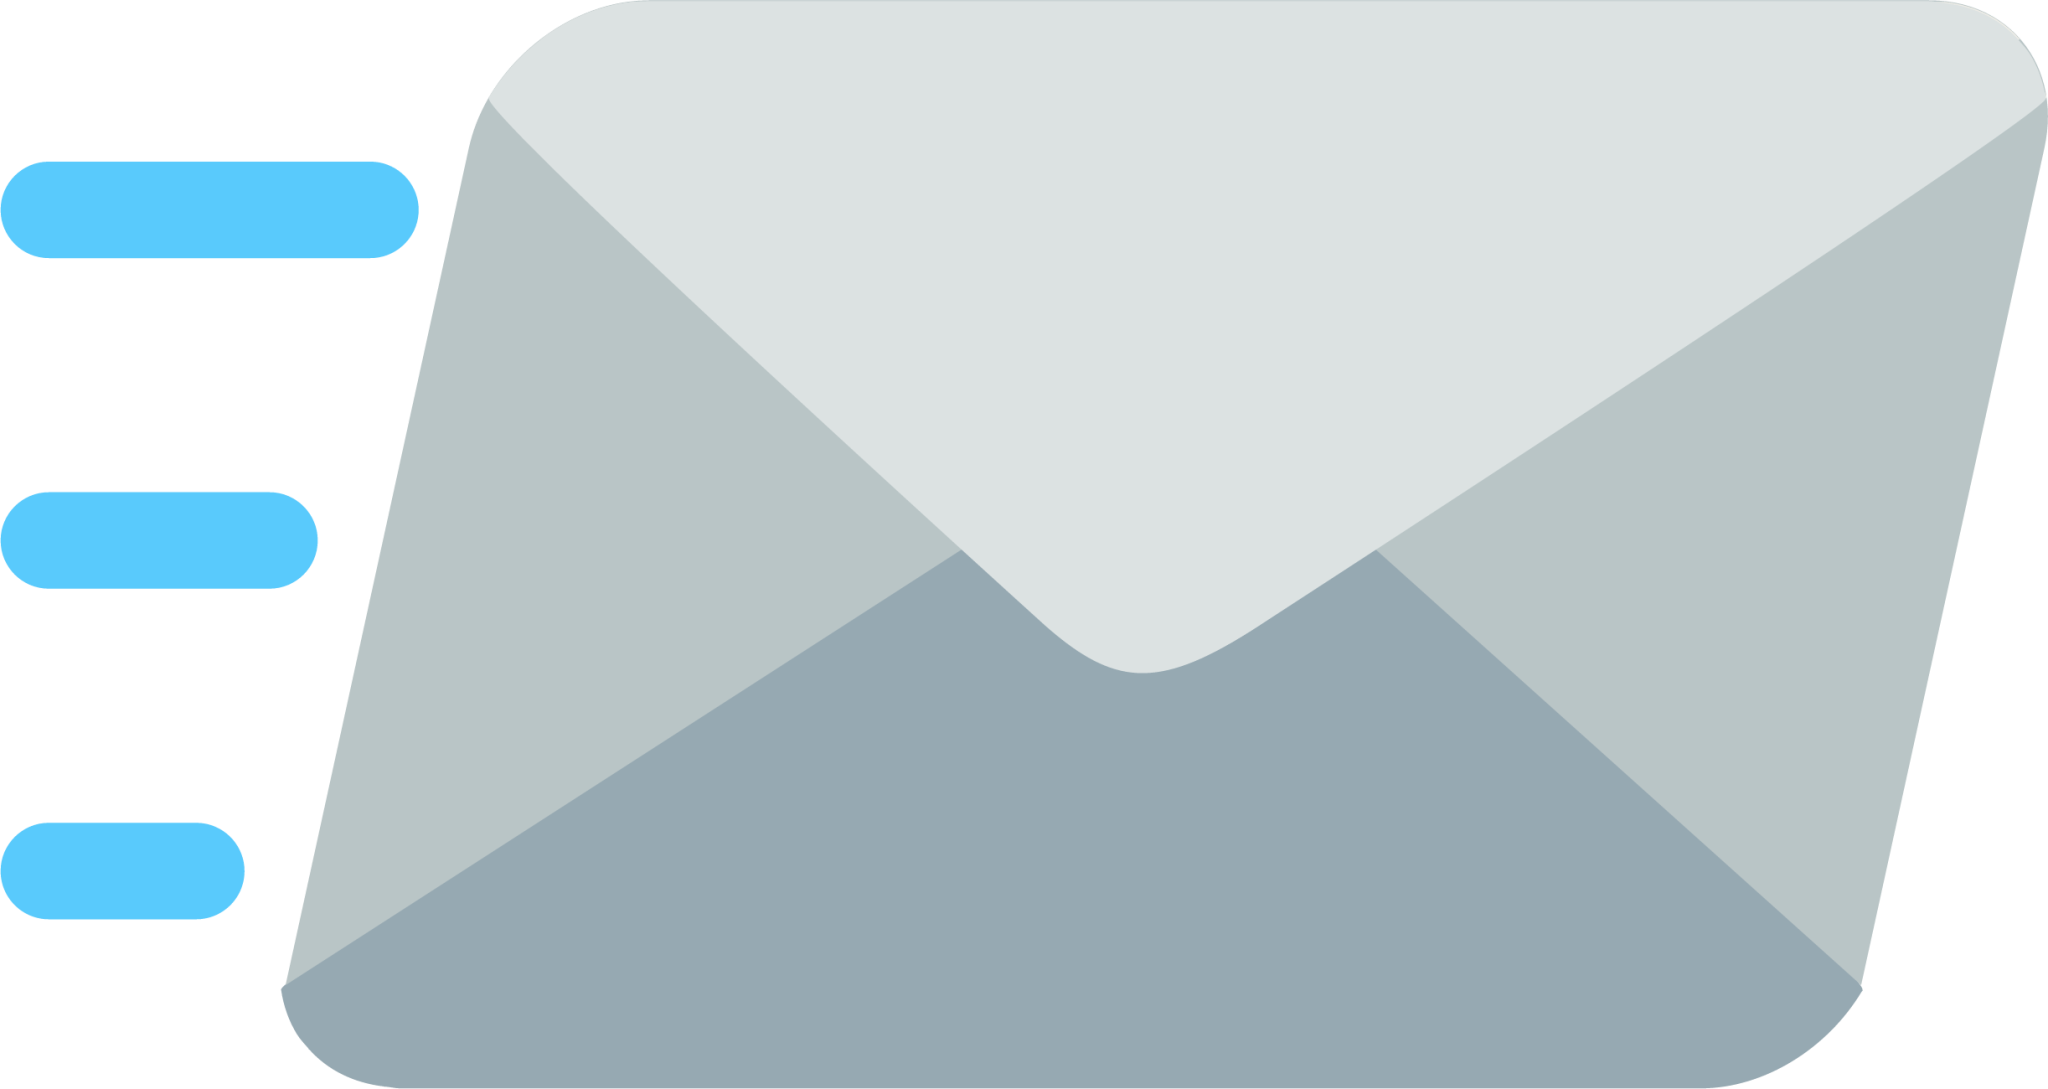 red envelope Emoji - Download for free – Iconduck